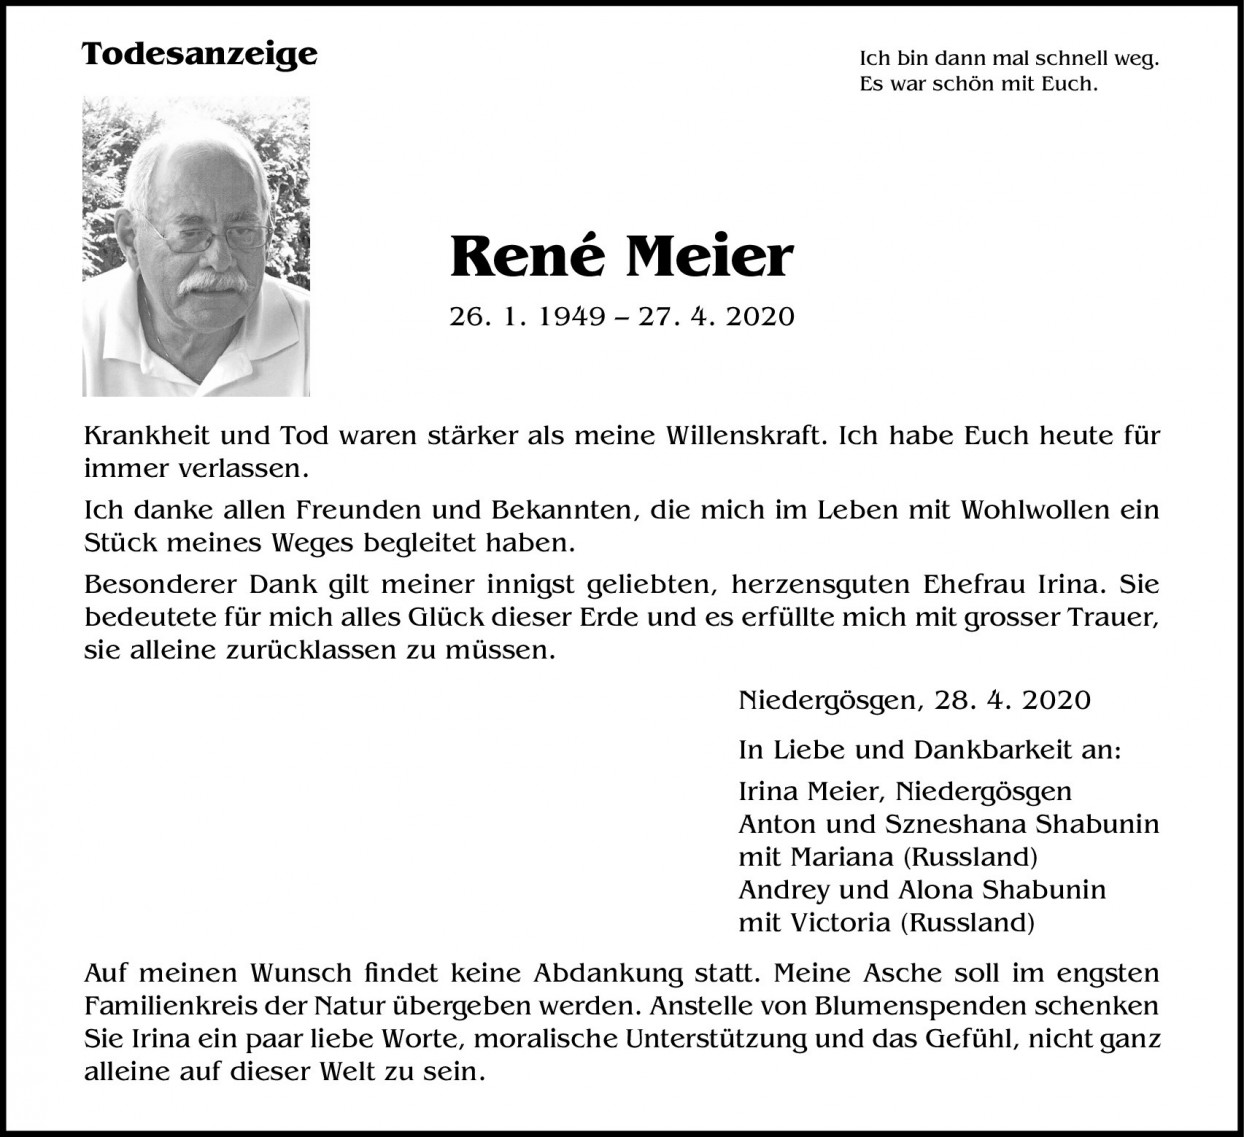 René Meier